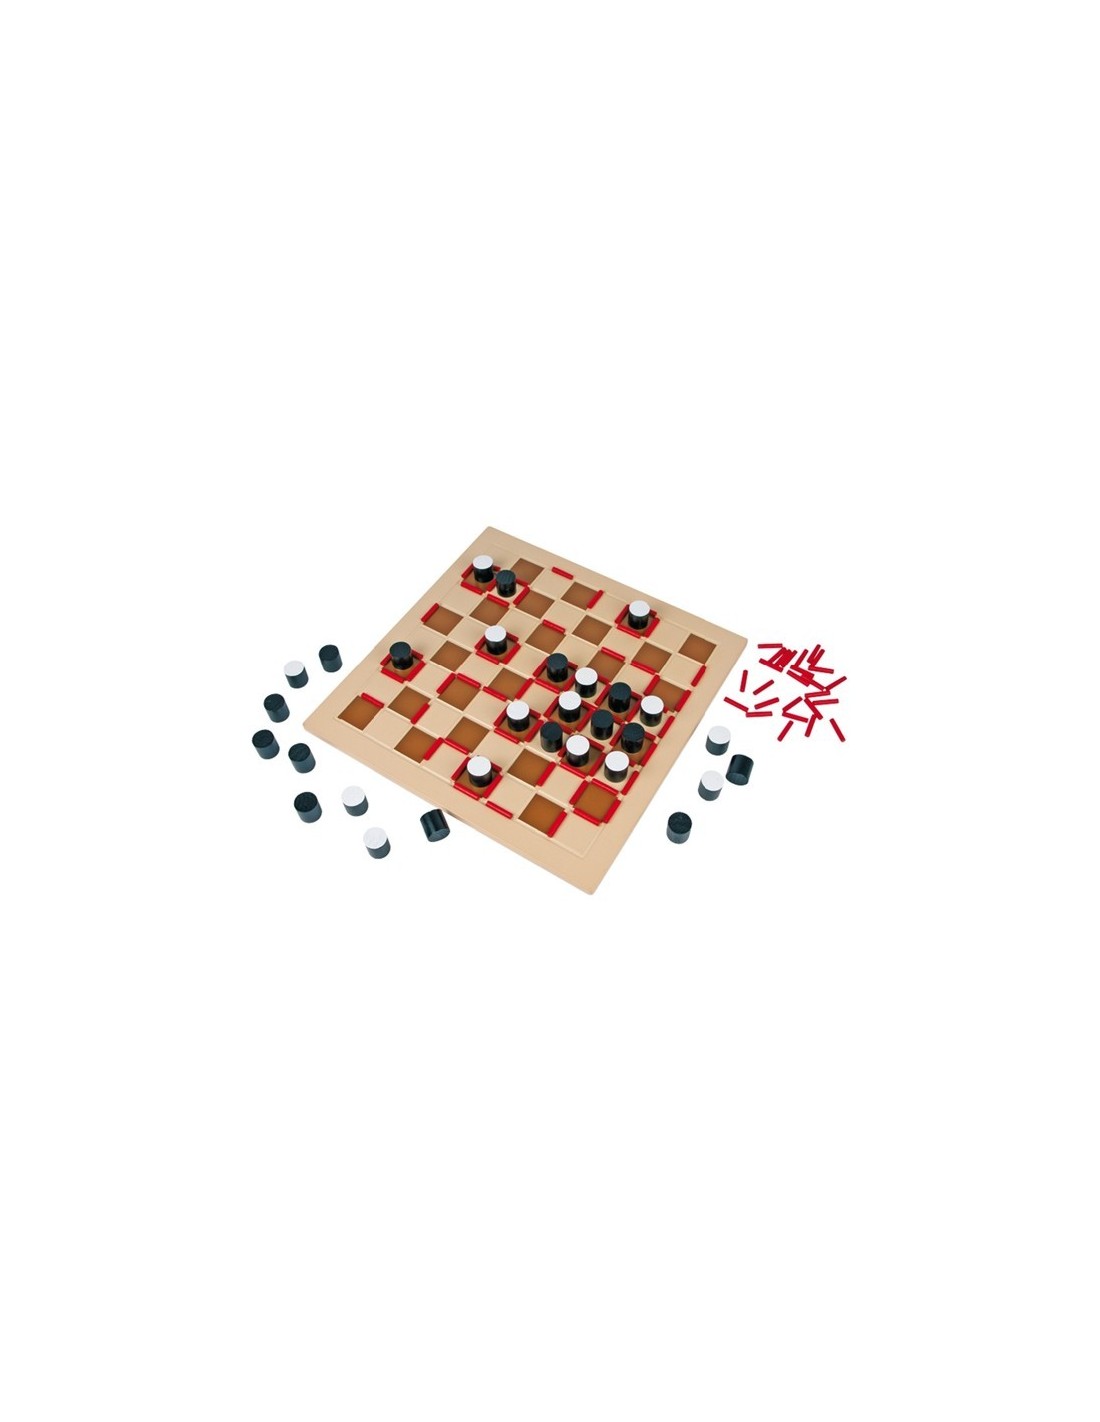 Juego de mesa de madera reversible para 2 jugadores juego educativo de lógica y estrategia